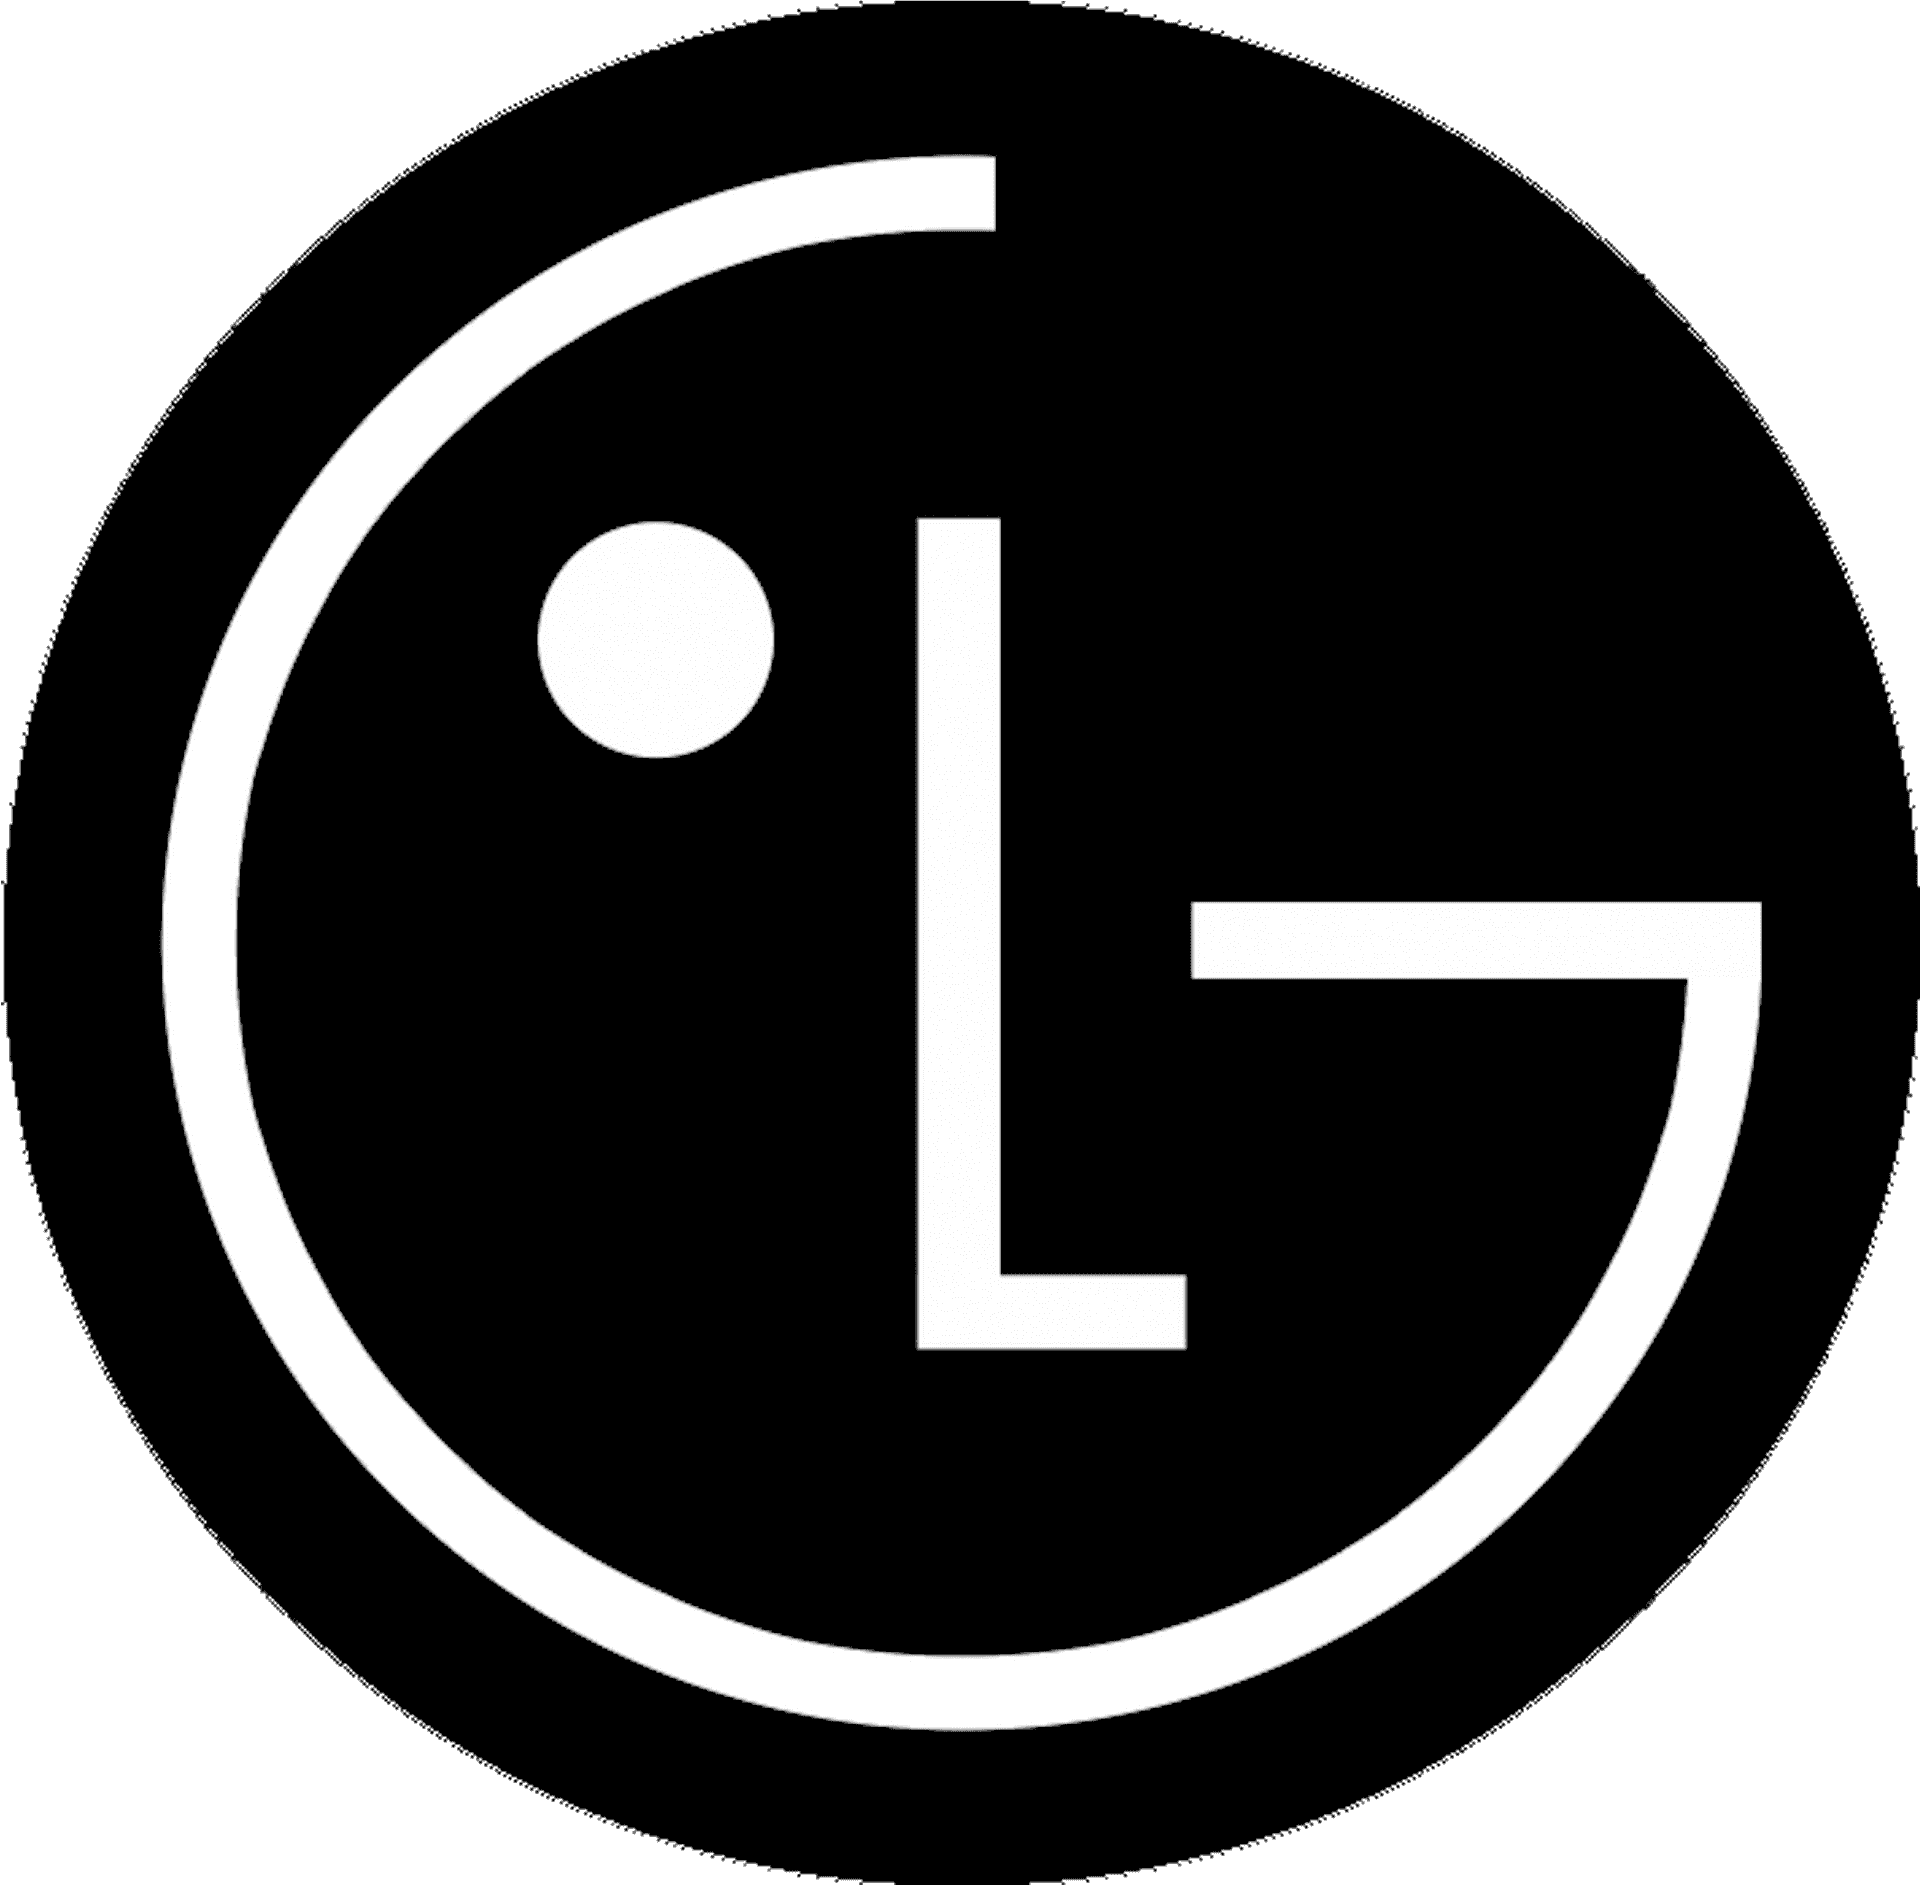 L G Electronics Logo PNG